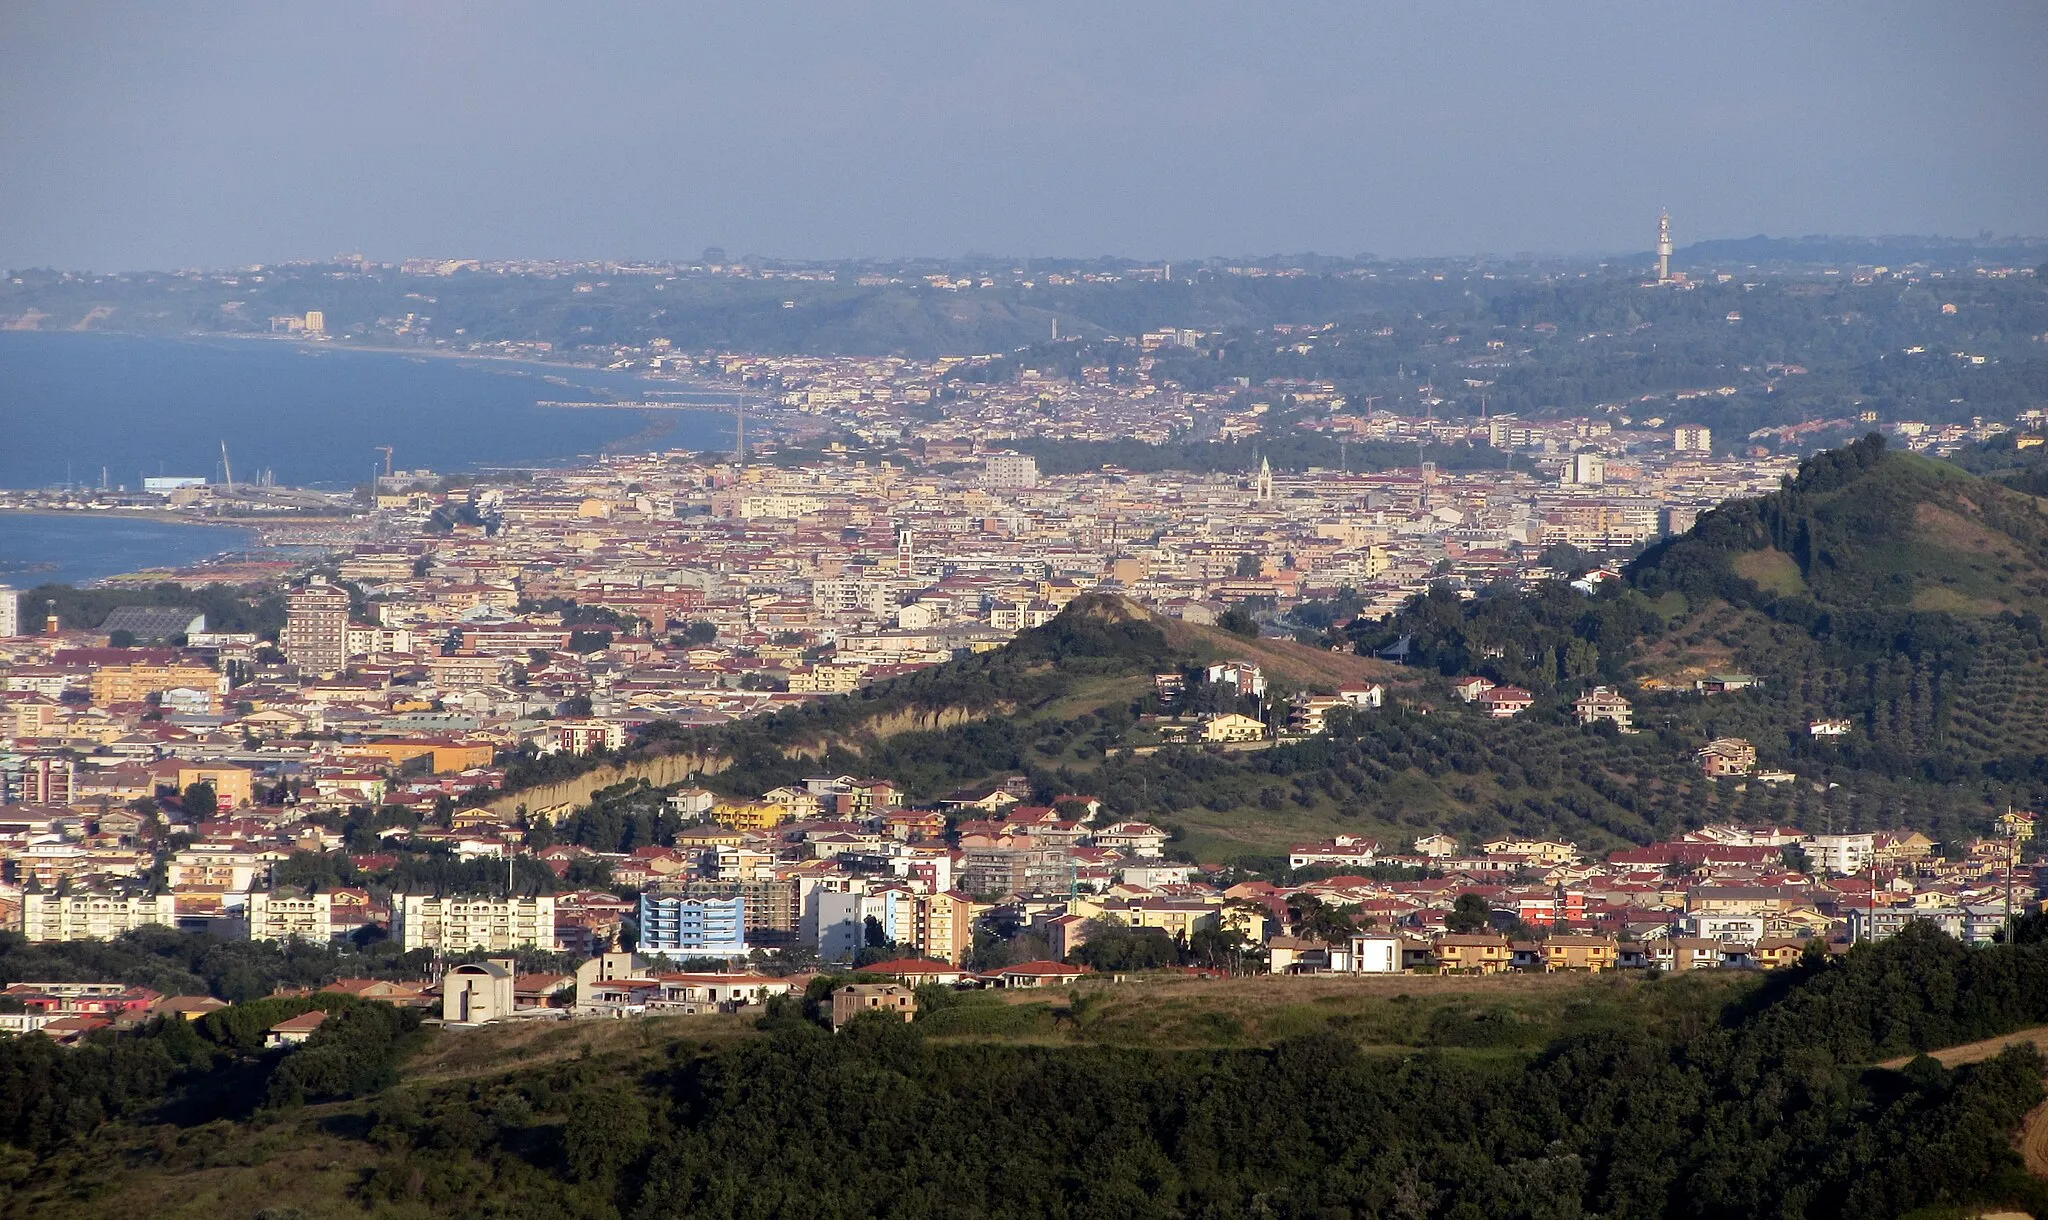 Image of Pescara